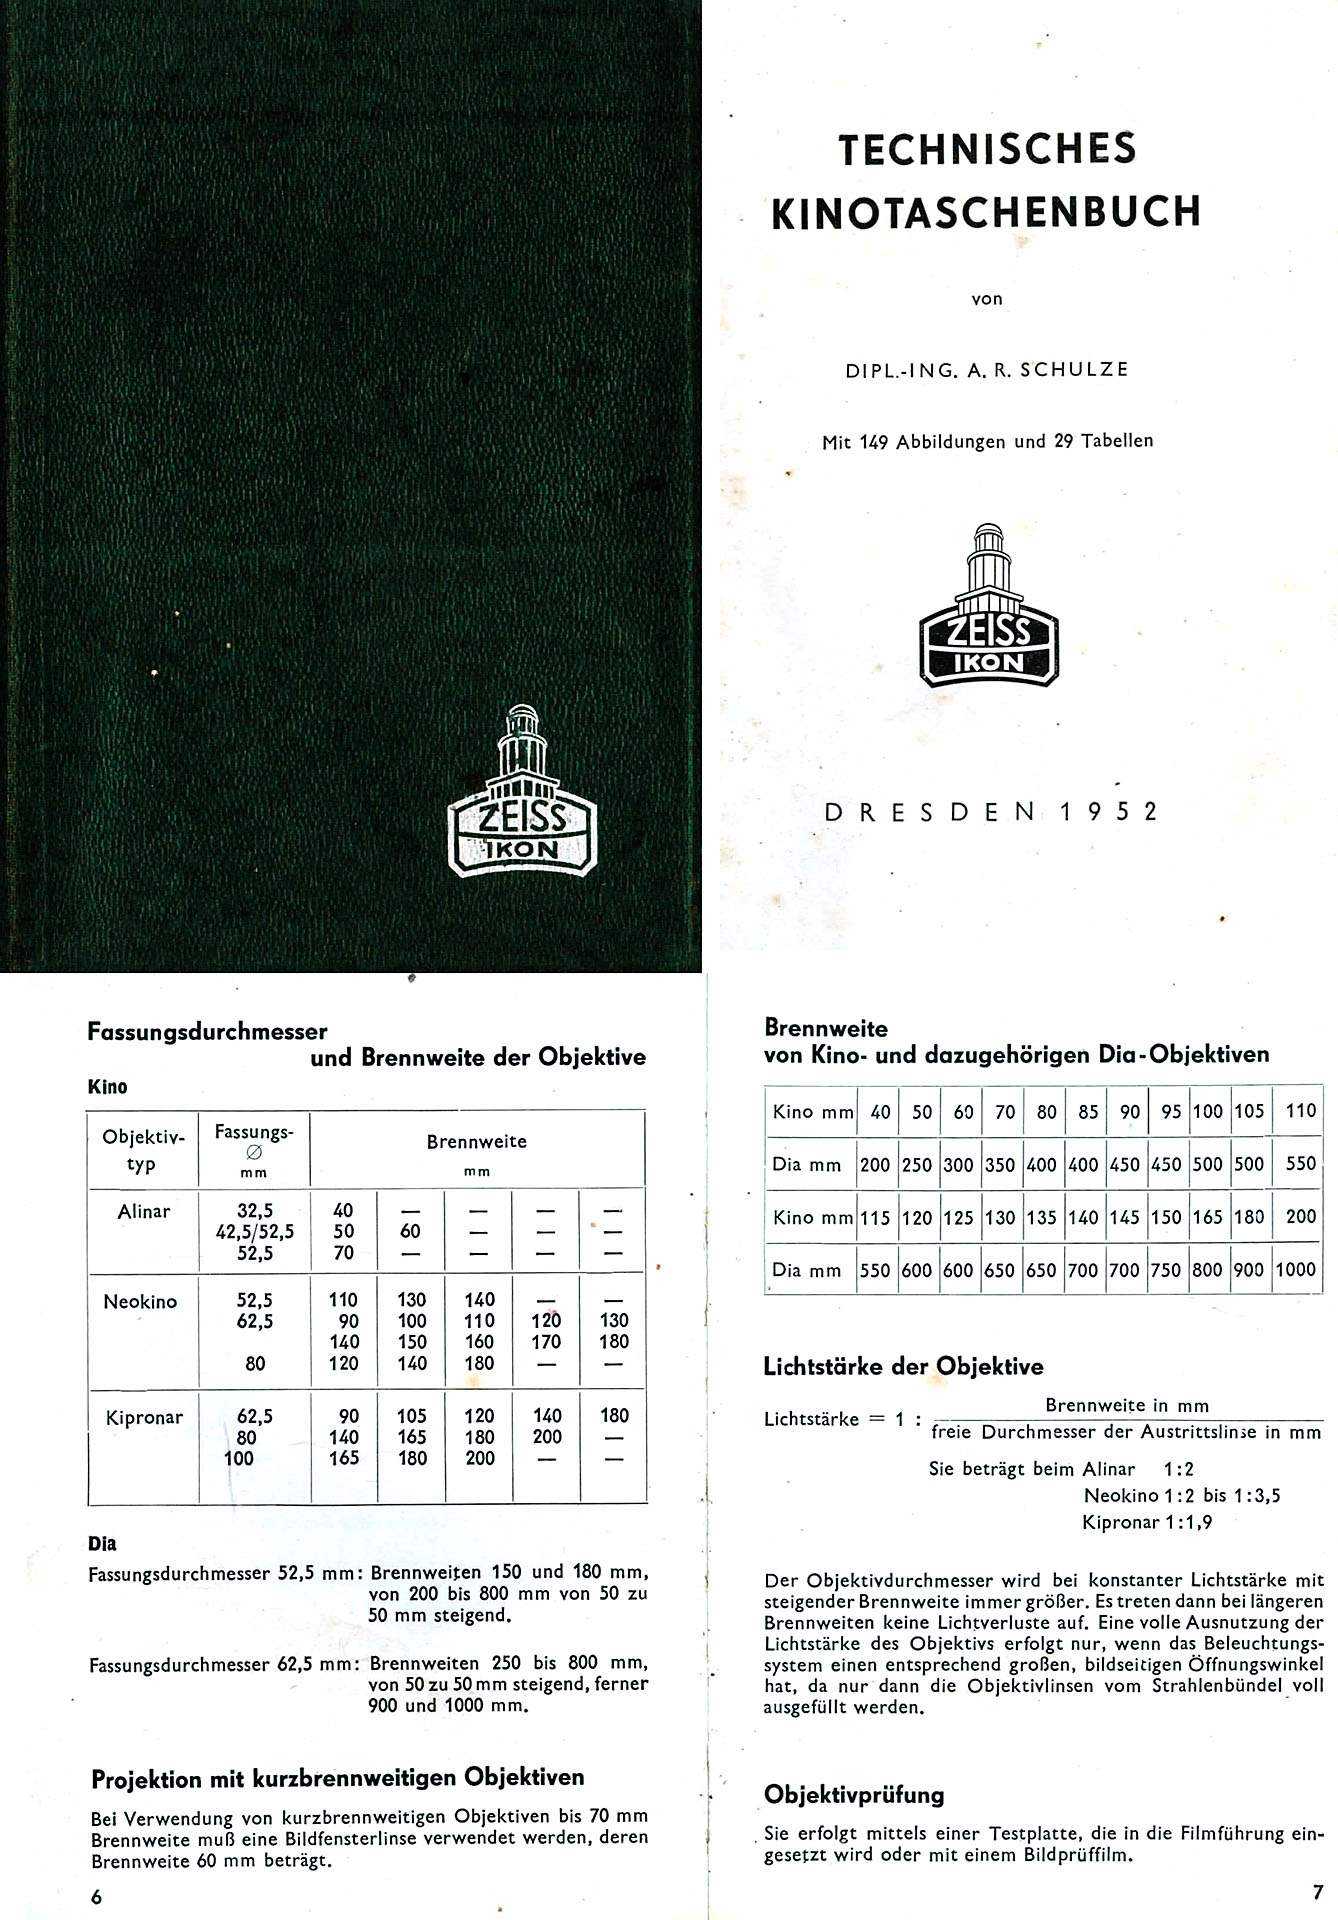 Technisches Kinotaschenbuch - Schulze, A. R.